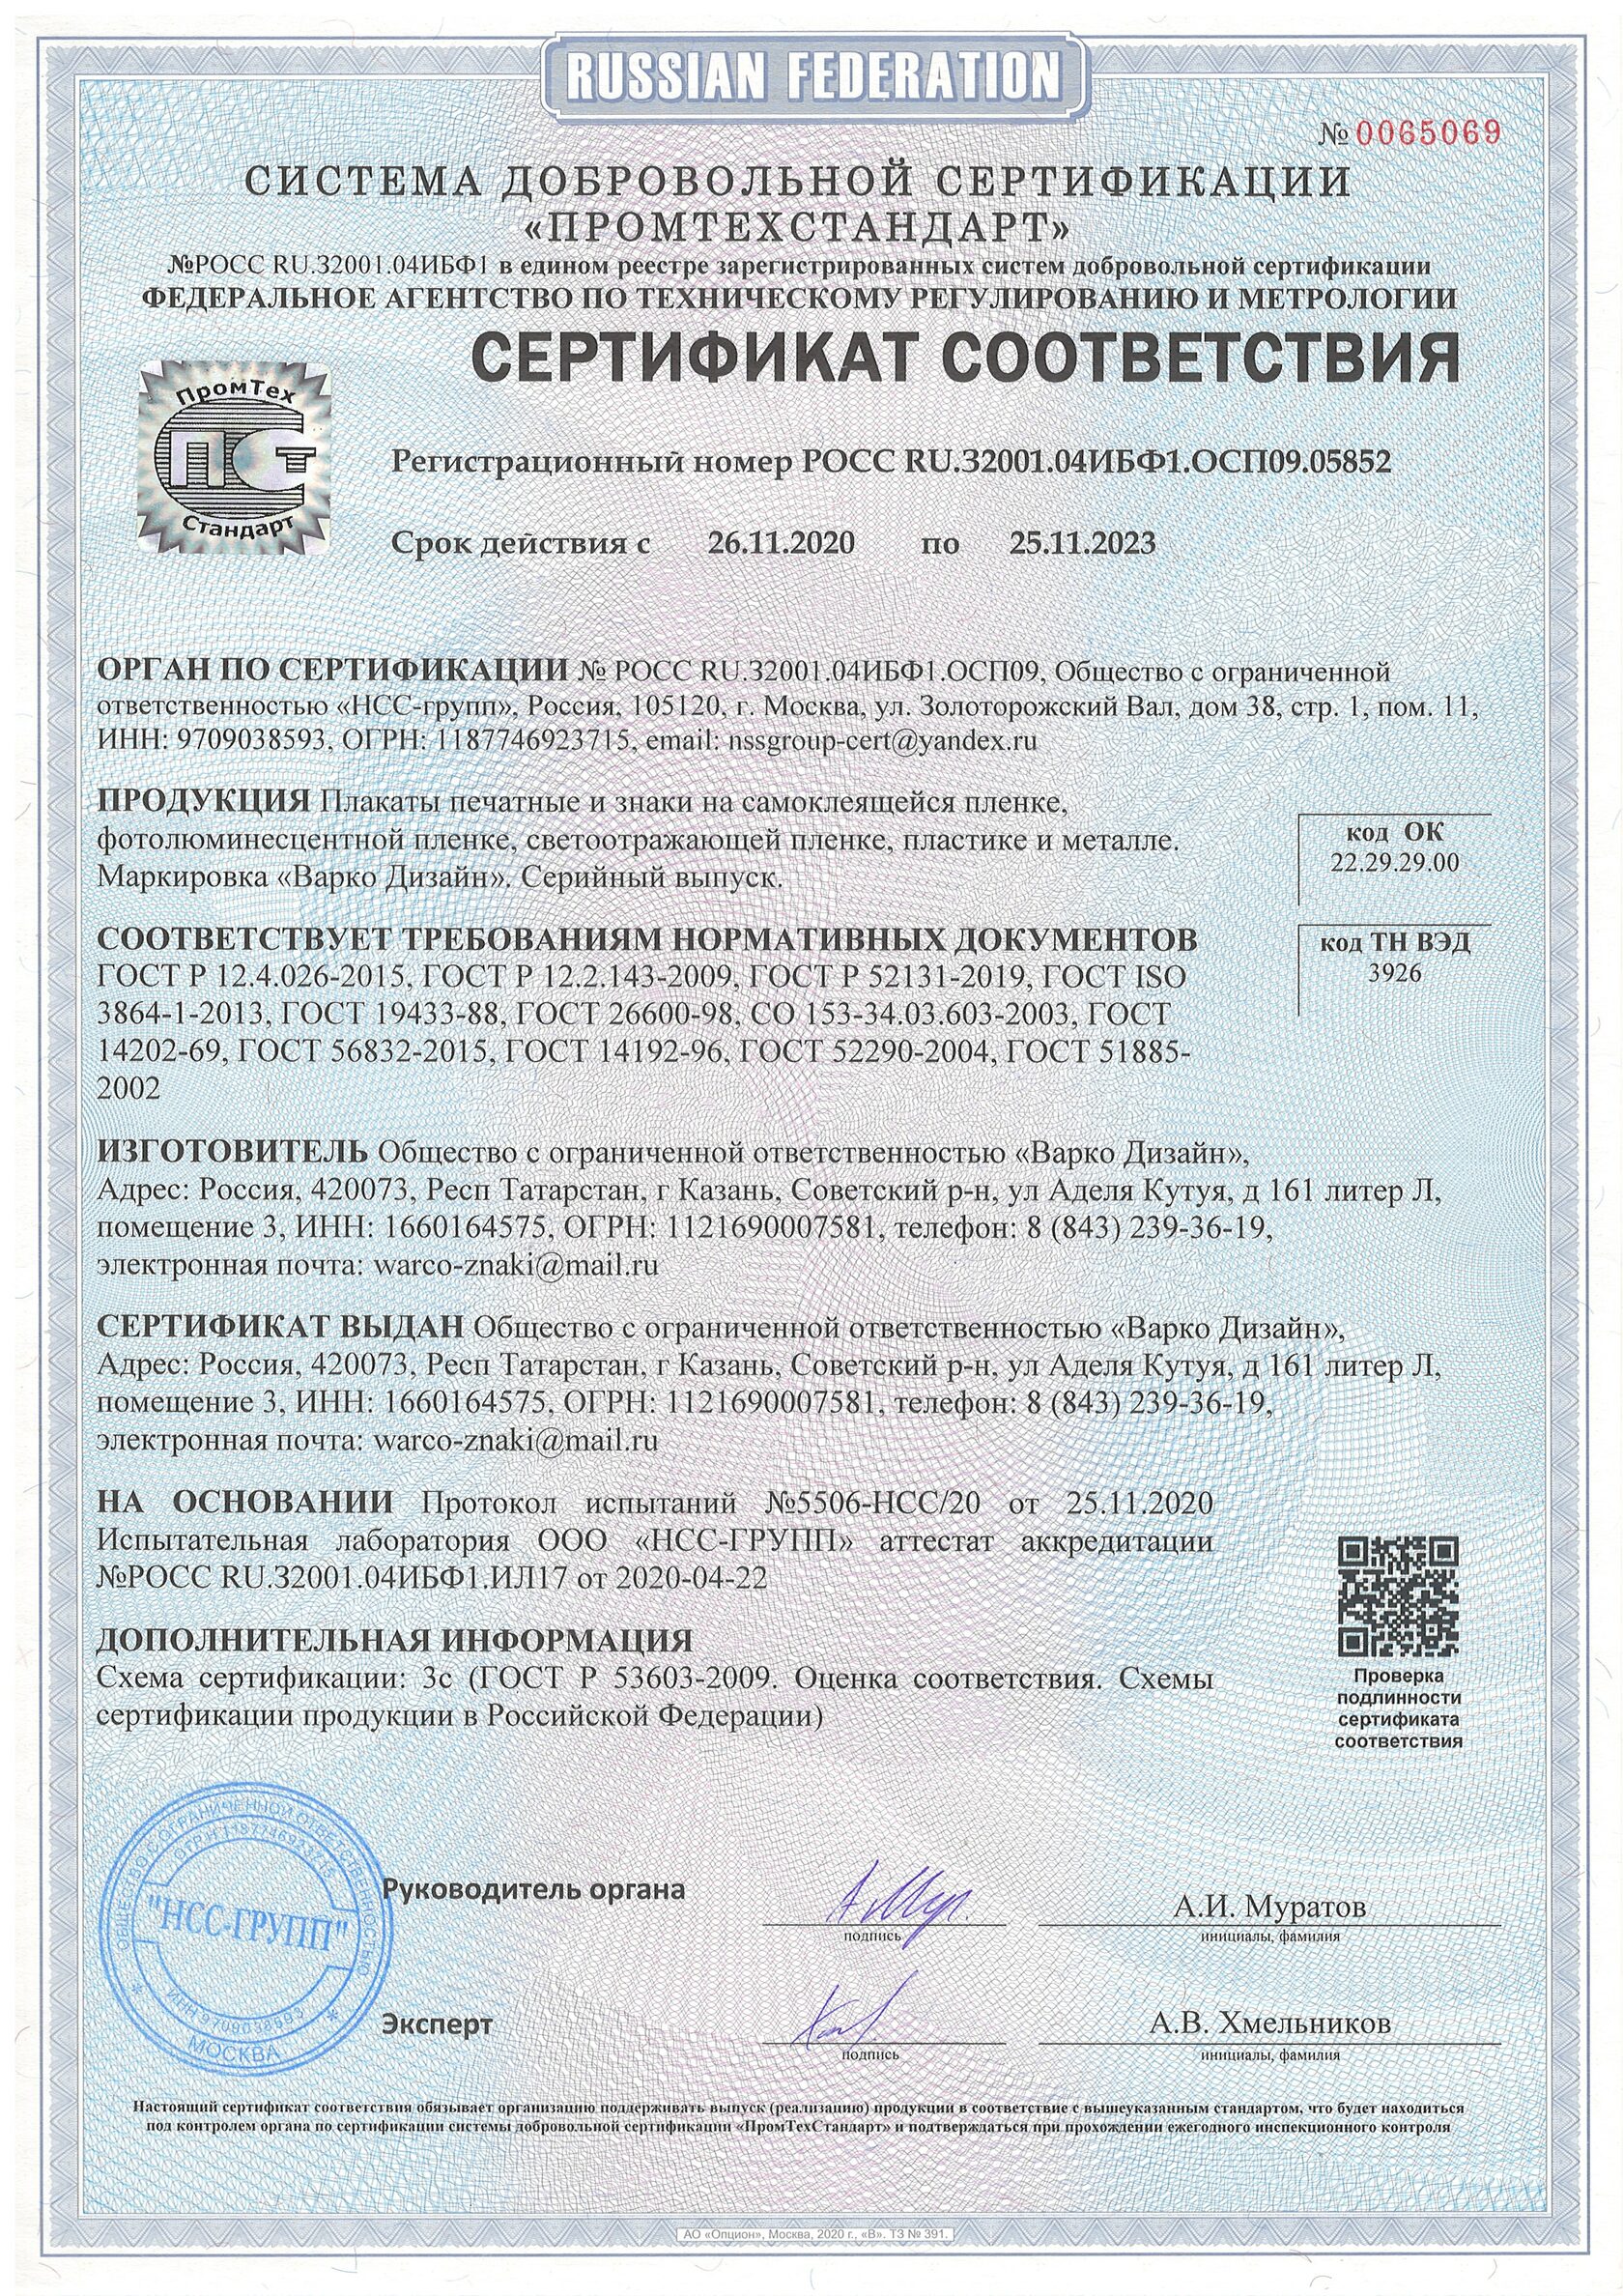 ЭЙОТ Восток сертификат соответствия